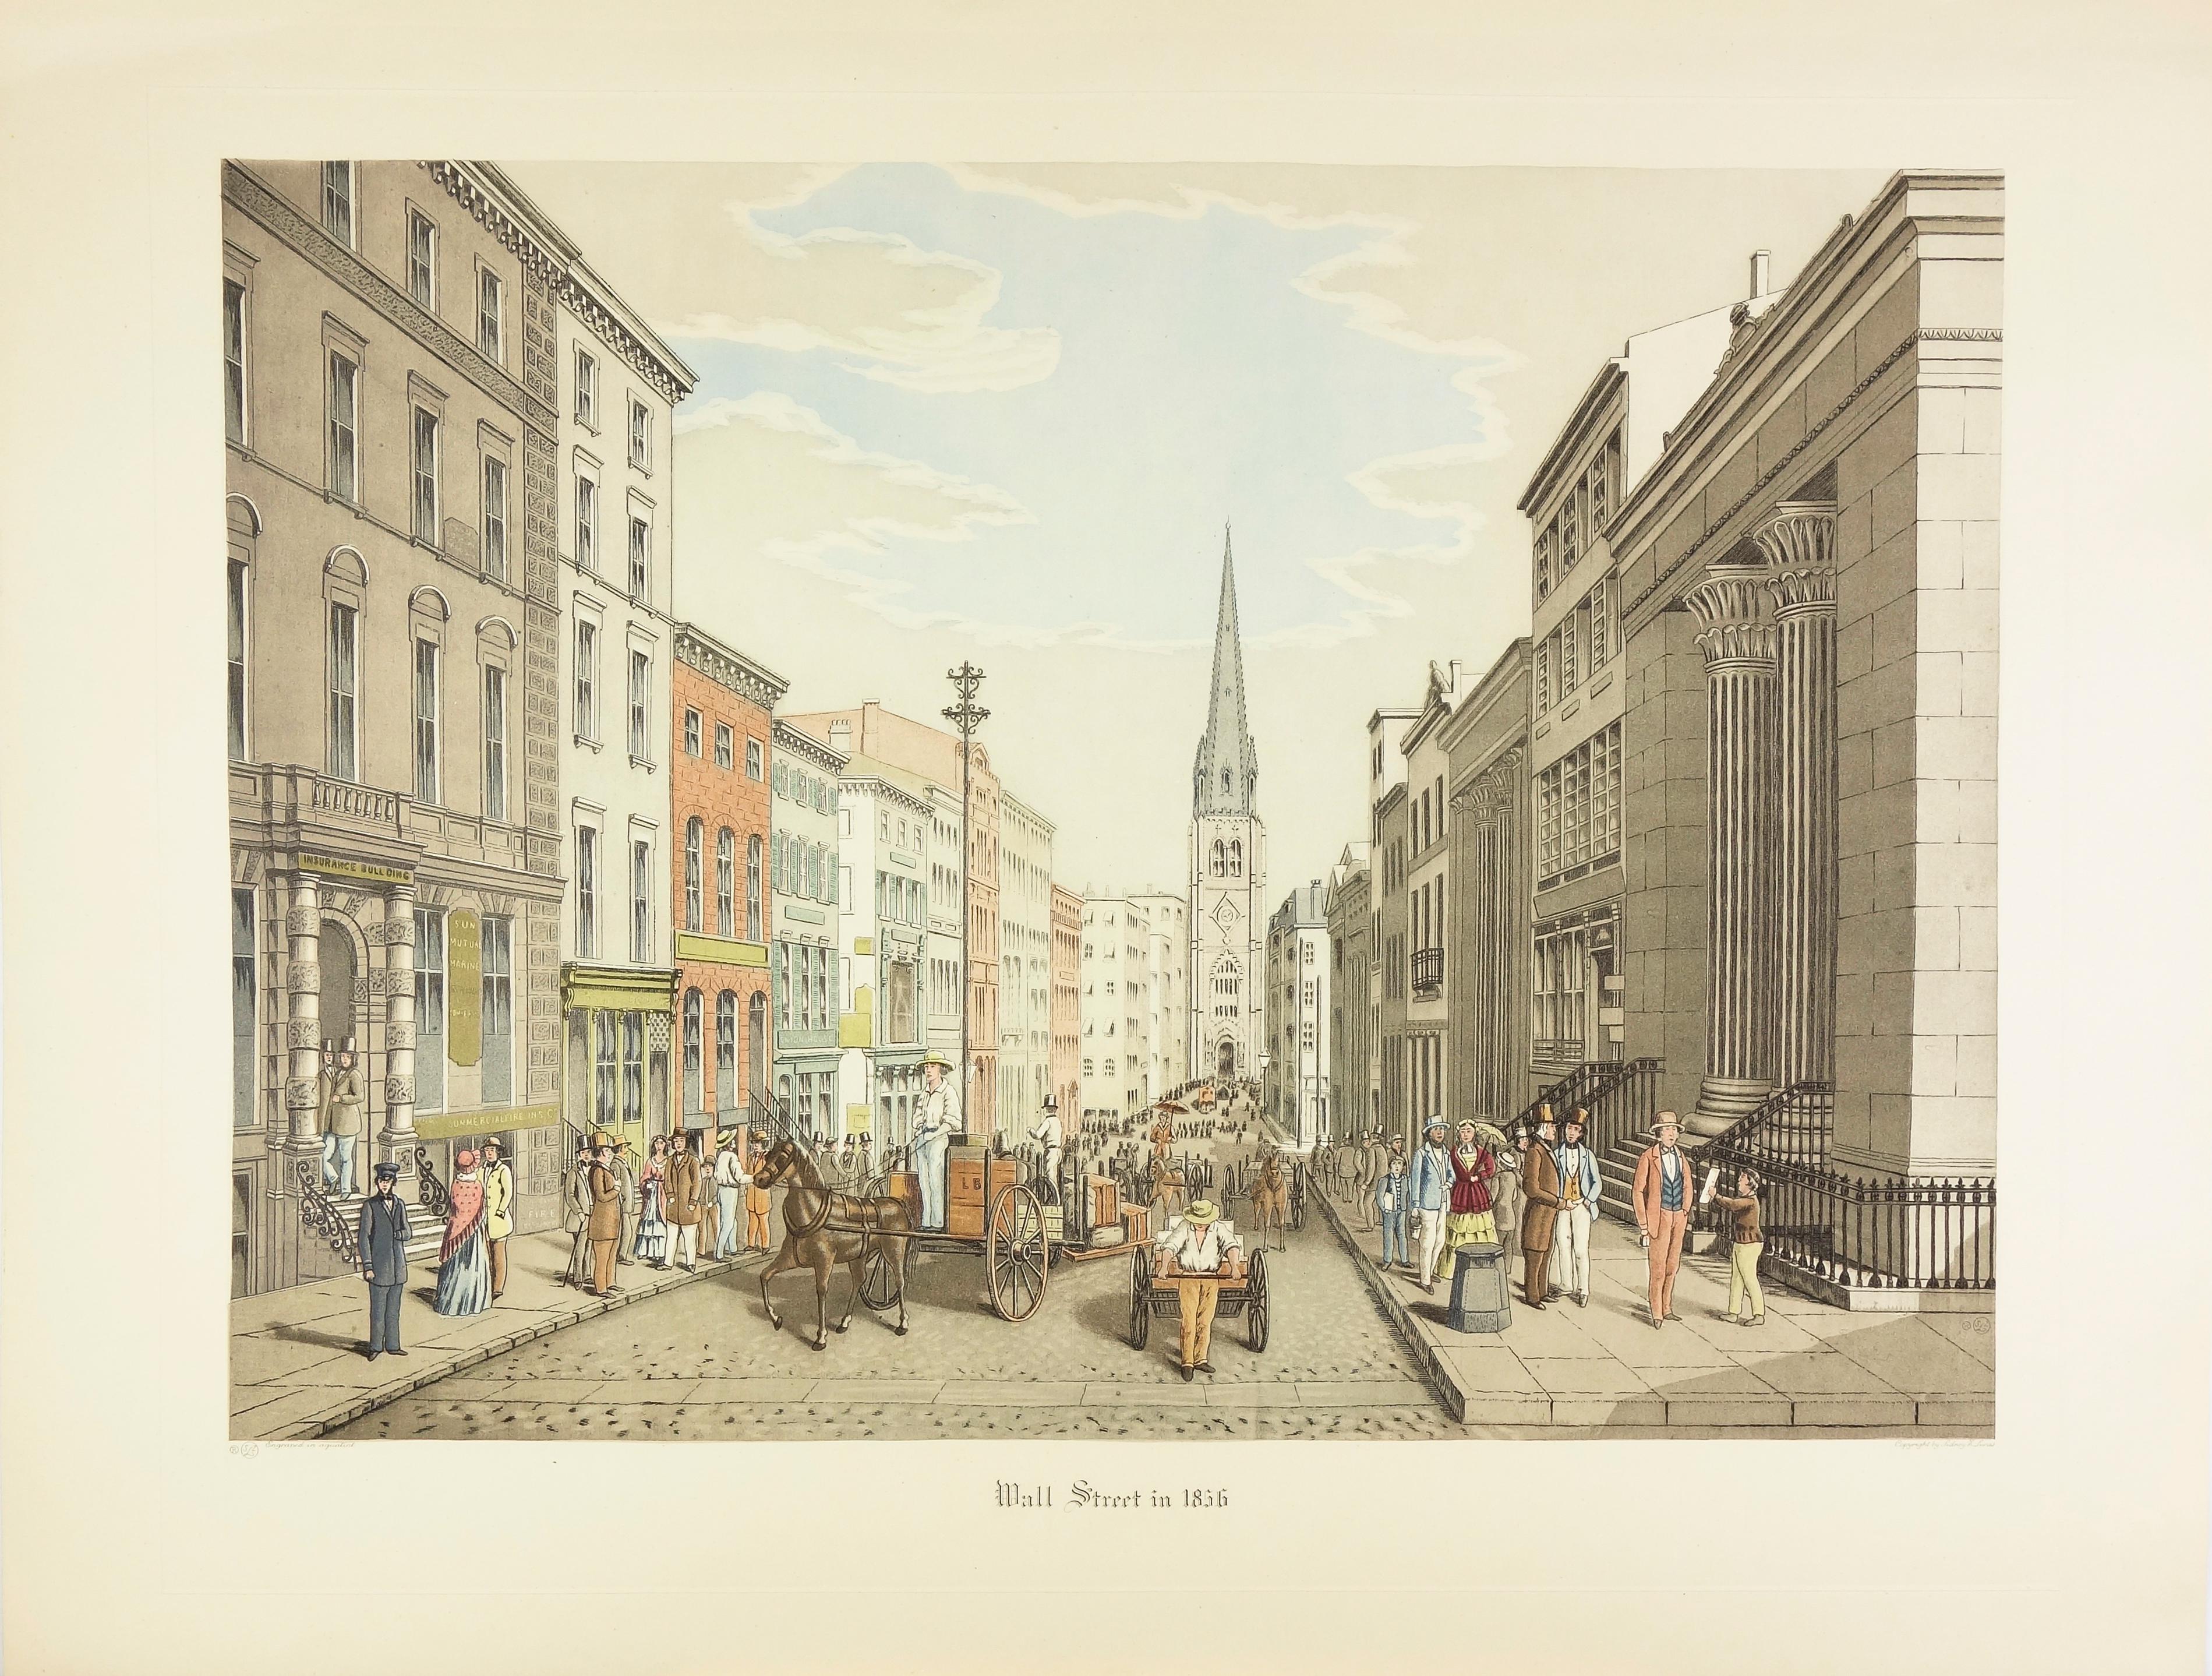 Wall Street in 1856